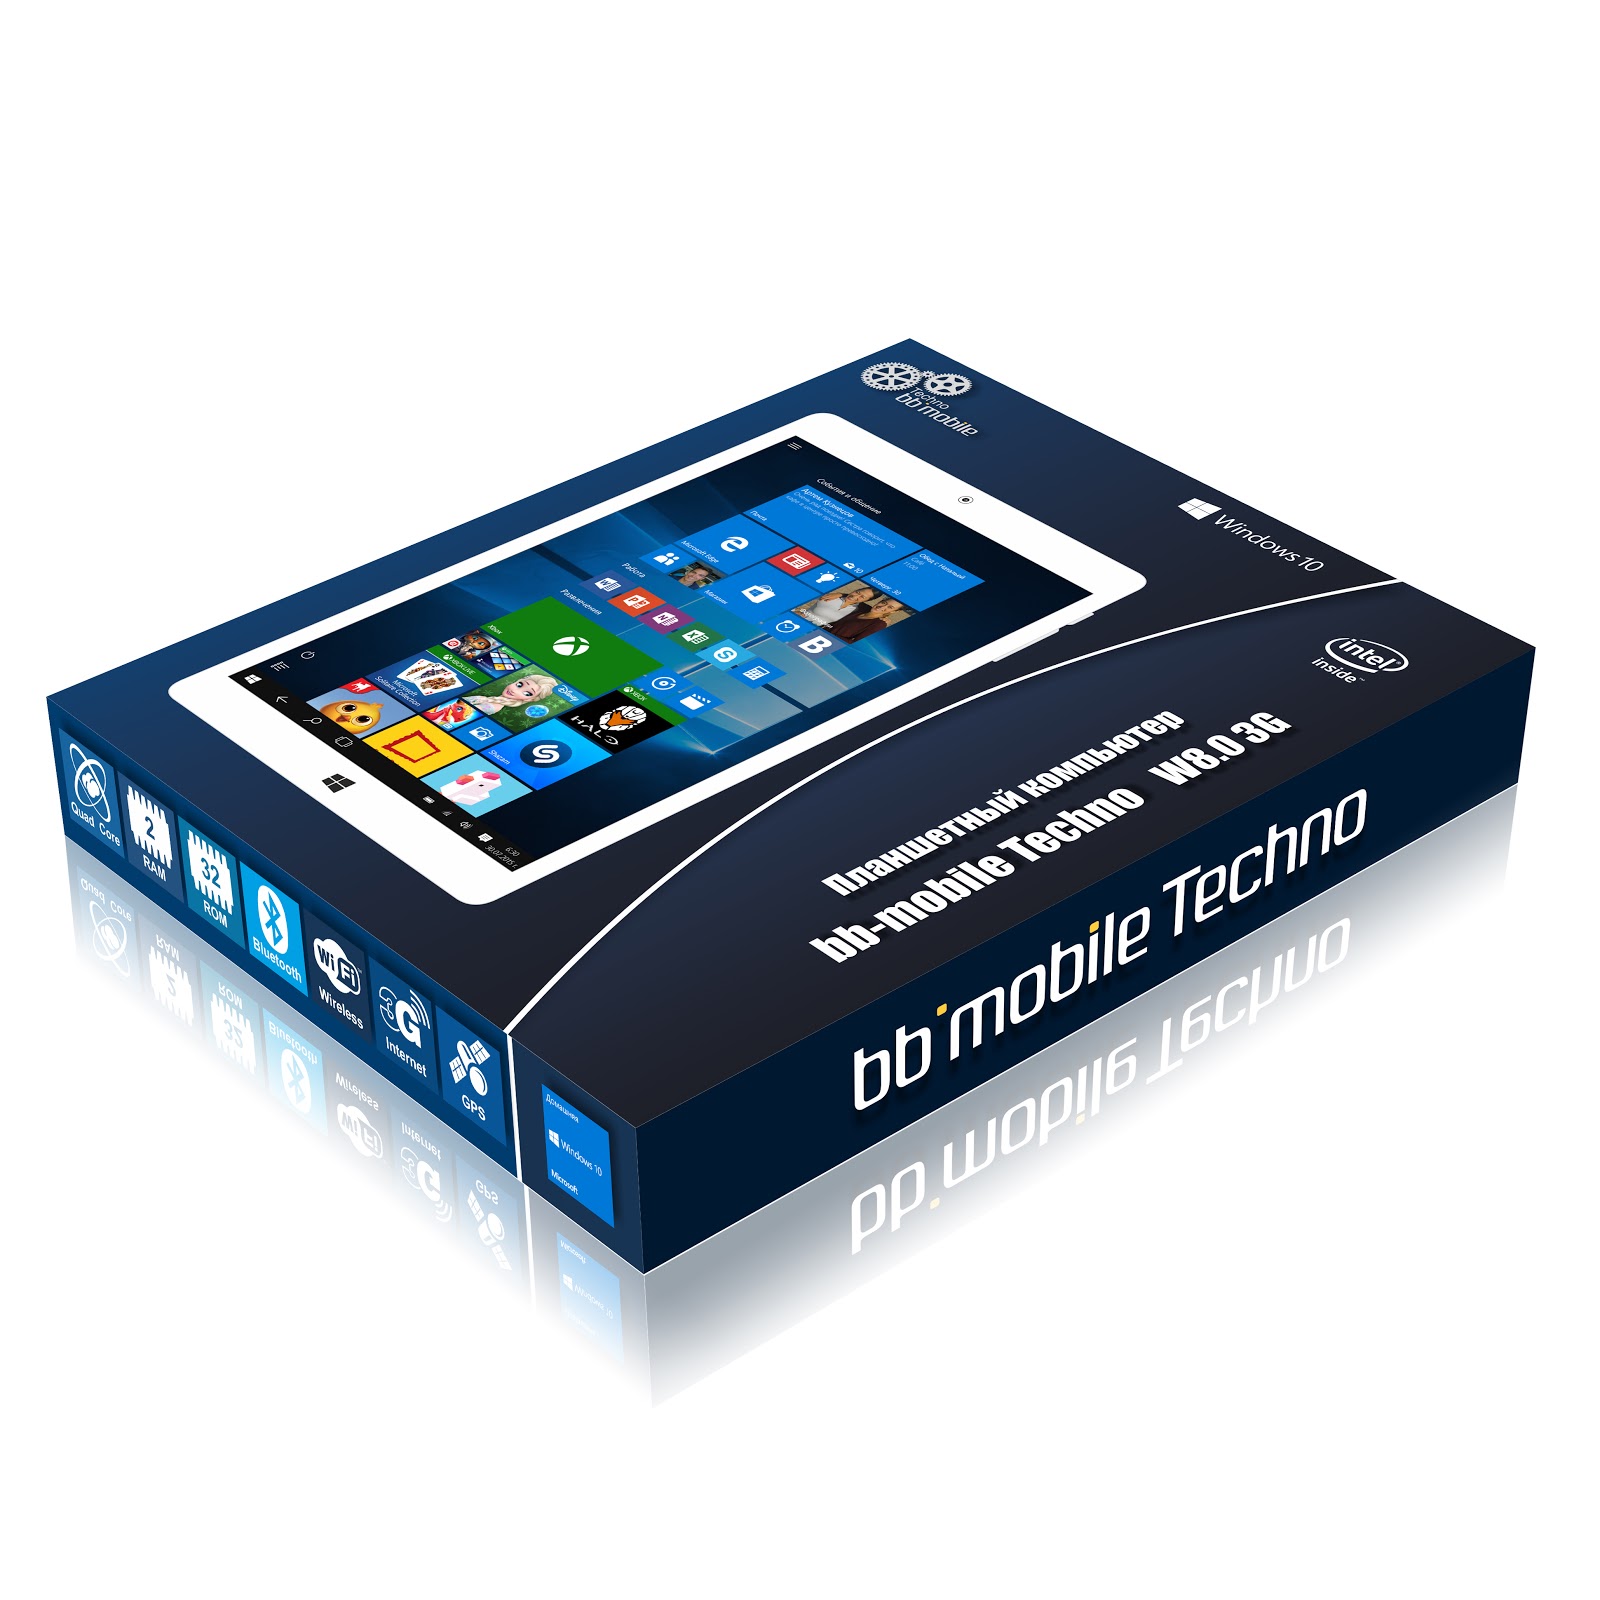 Обзор bb-mobile Techno W8.0 3G (Q800AY): бюджетный 8-дюймовый планшет на Windows 10 с 3G-модемом - 2